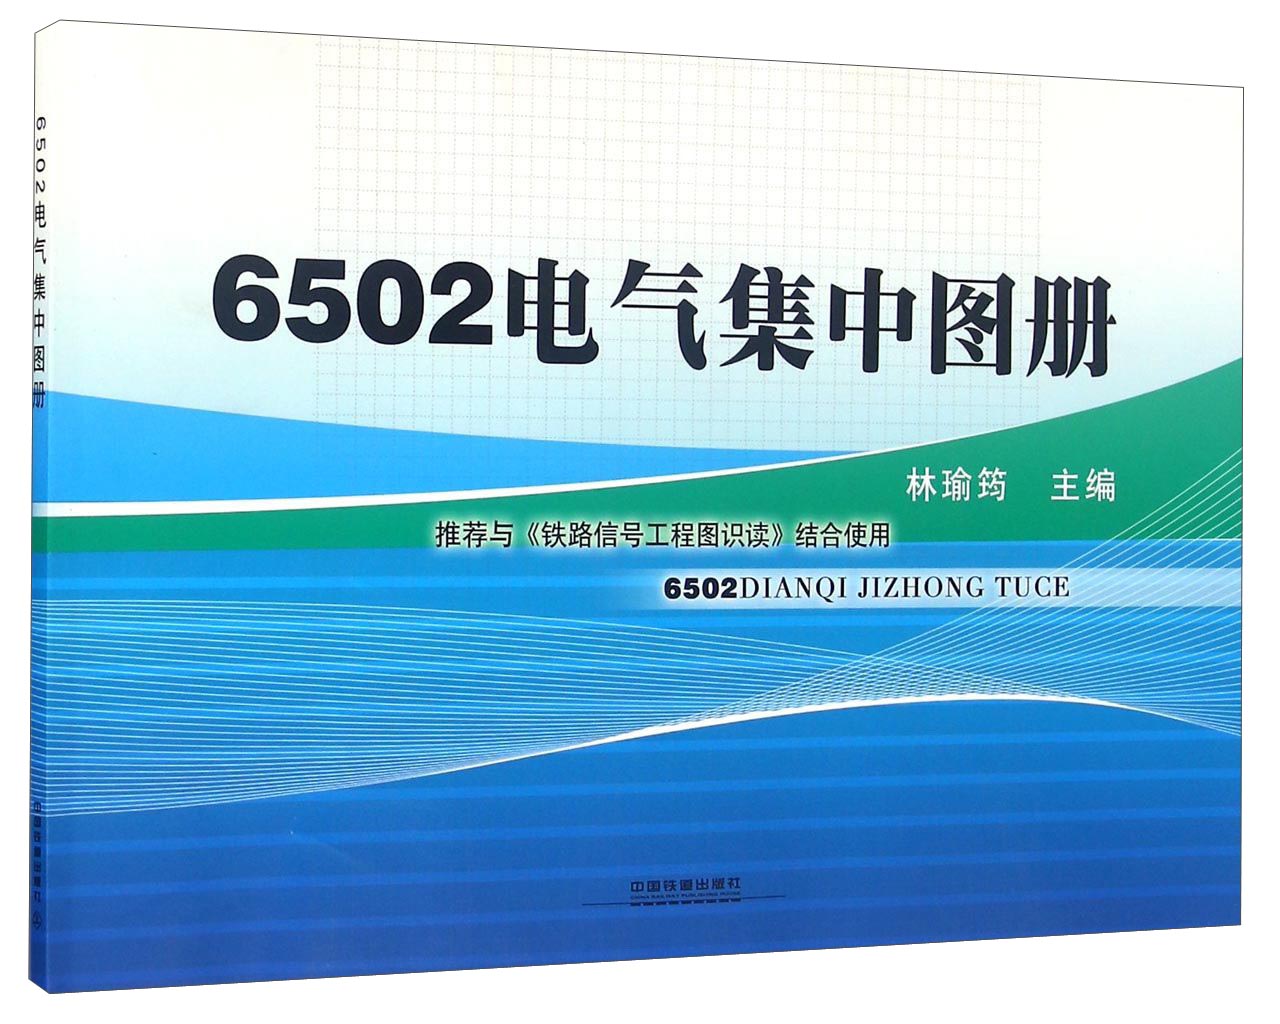 6502电气集中图册 pdf格式下载